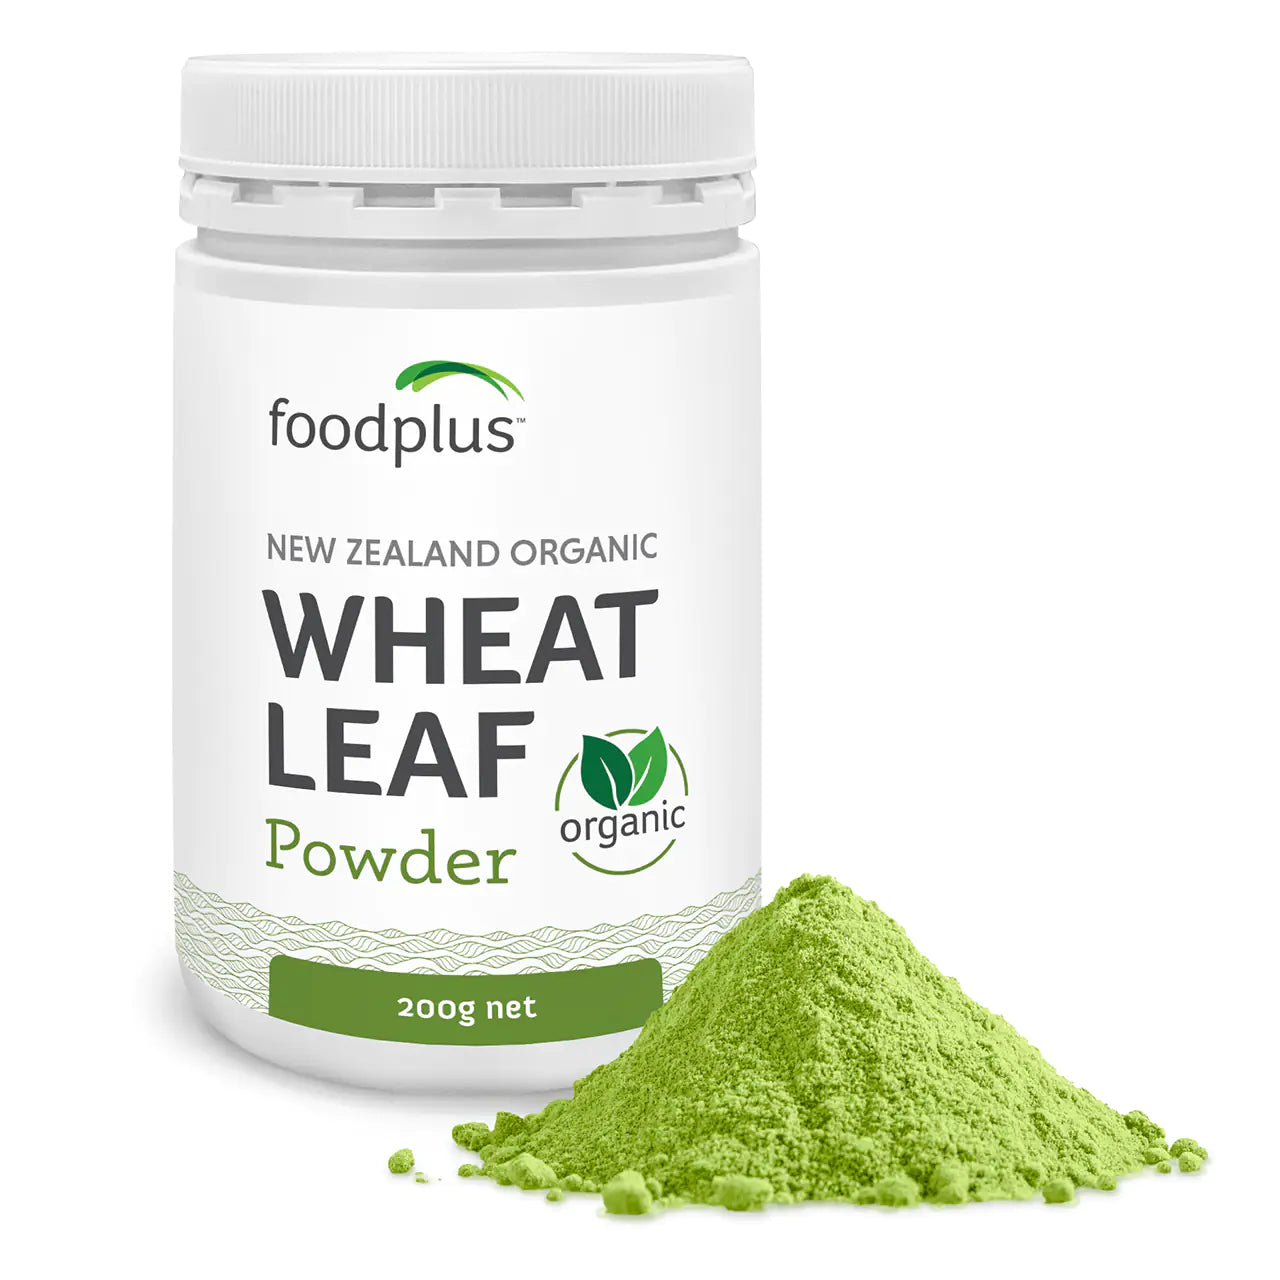 Food Plus Wheat Leaf Organic Powder